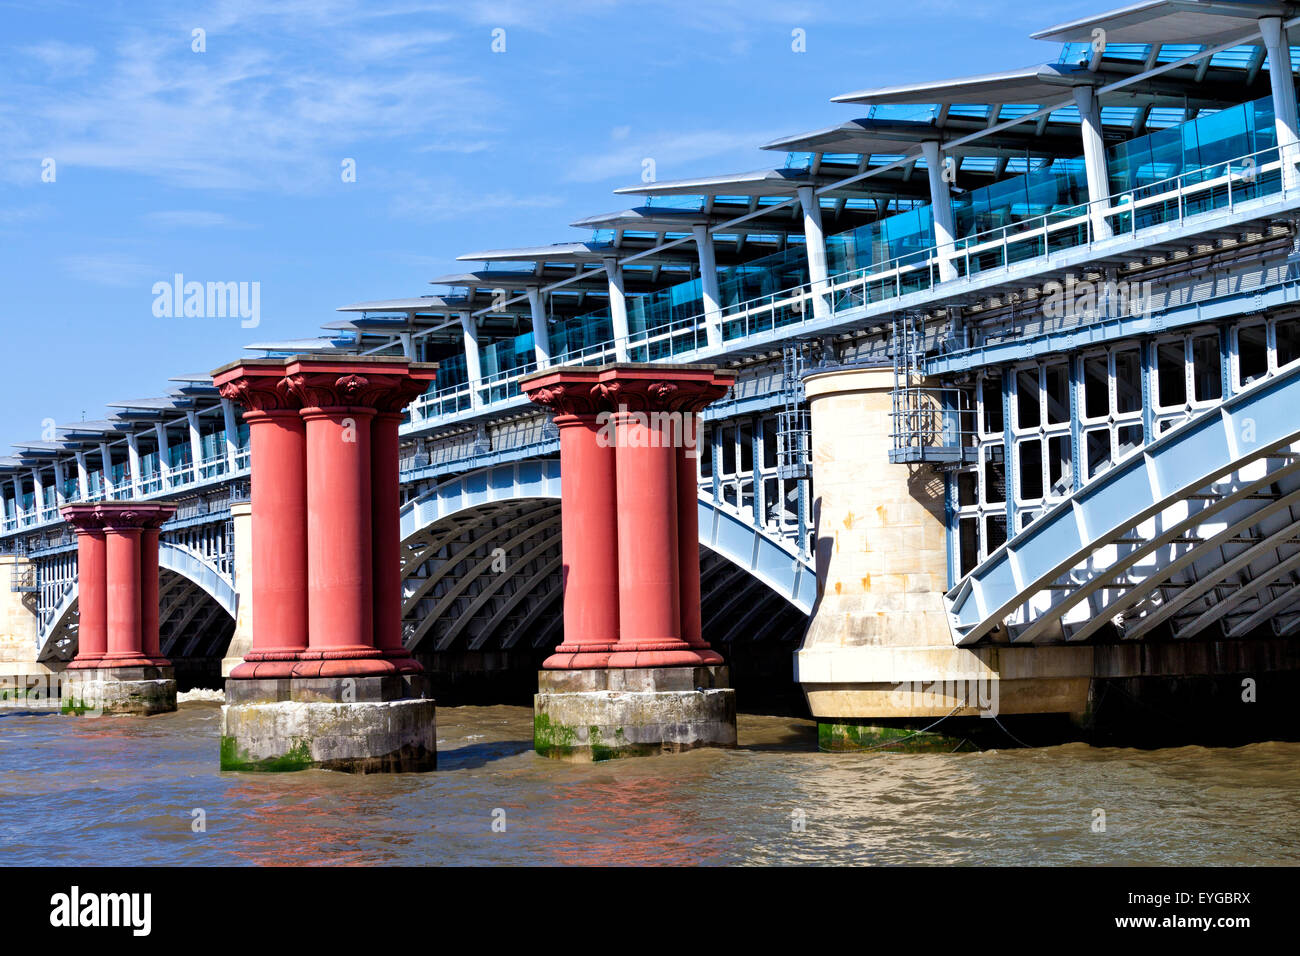 Voir à partir de la rive sud du côté ouest de fer wrough arch London Blackfriars pont de chemin de fer avec des plateformes crossing River Thames Banque D'Images